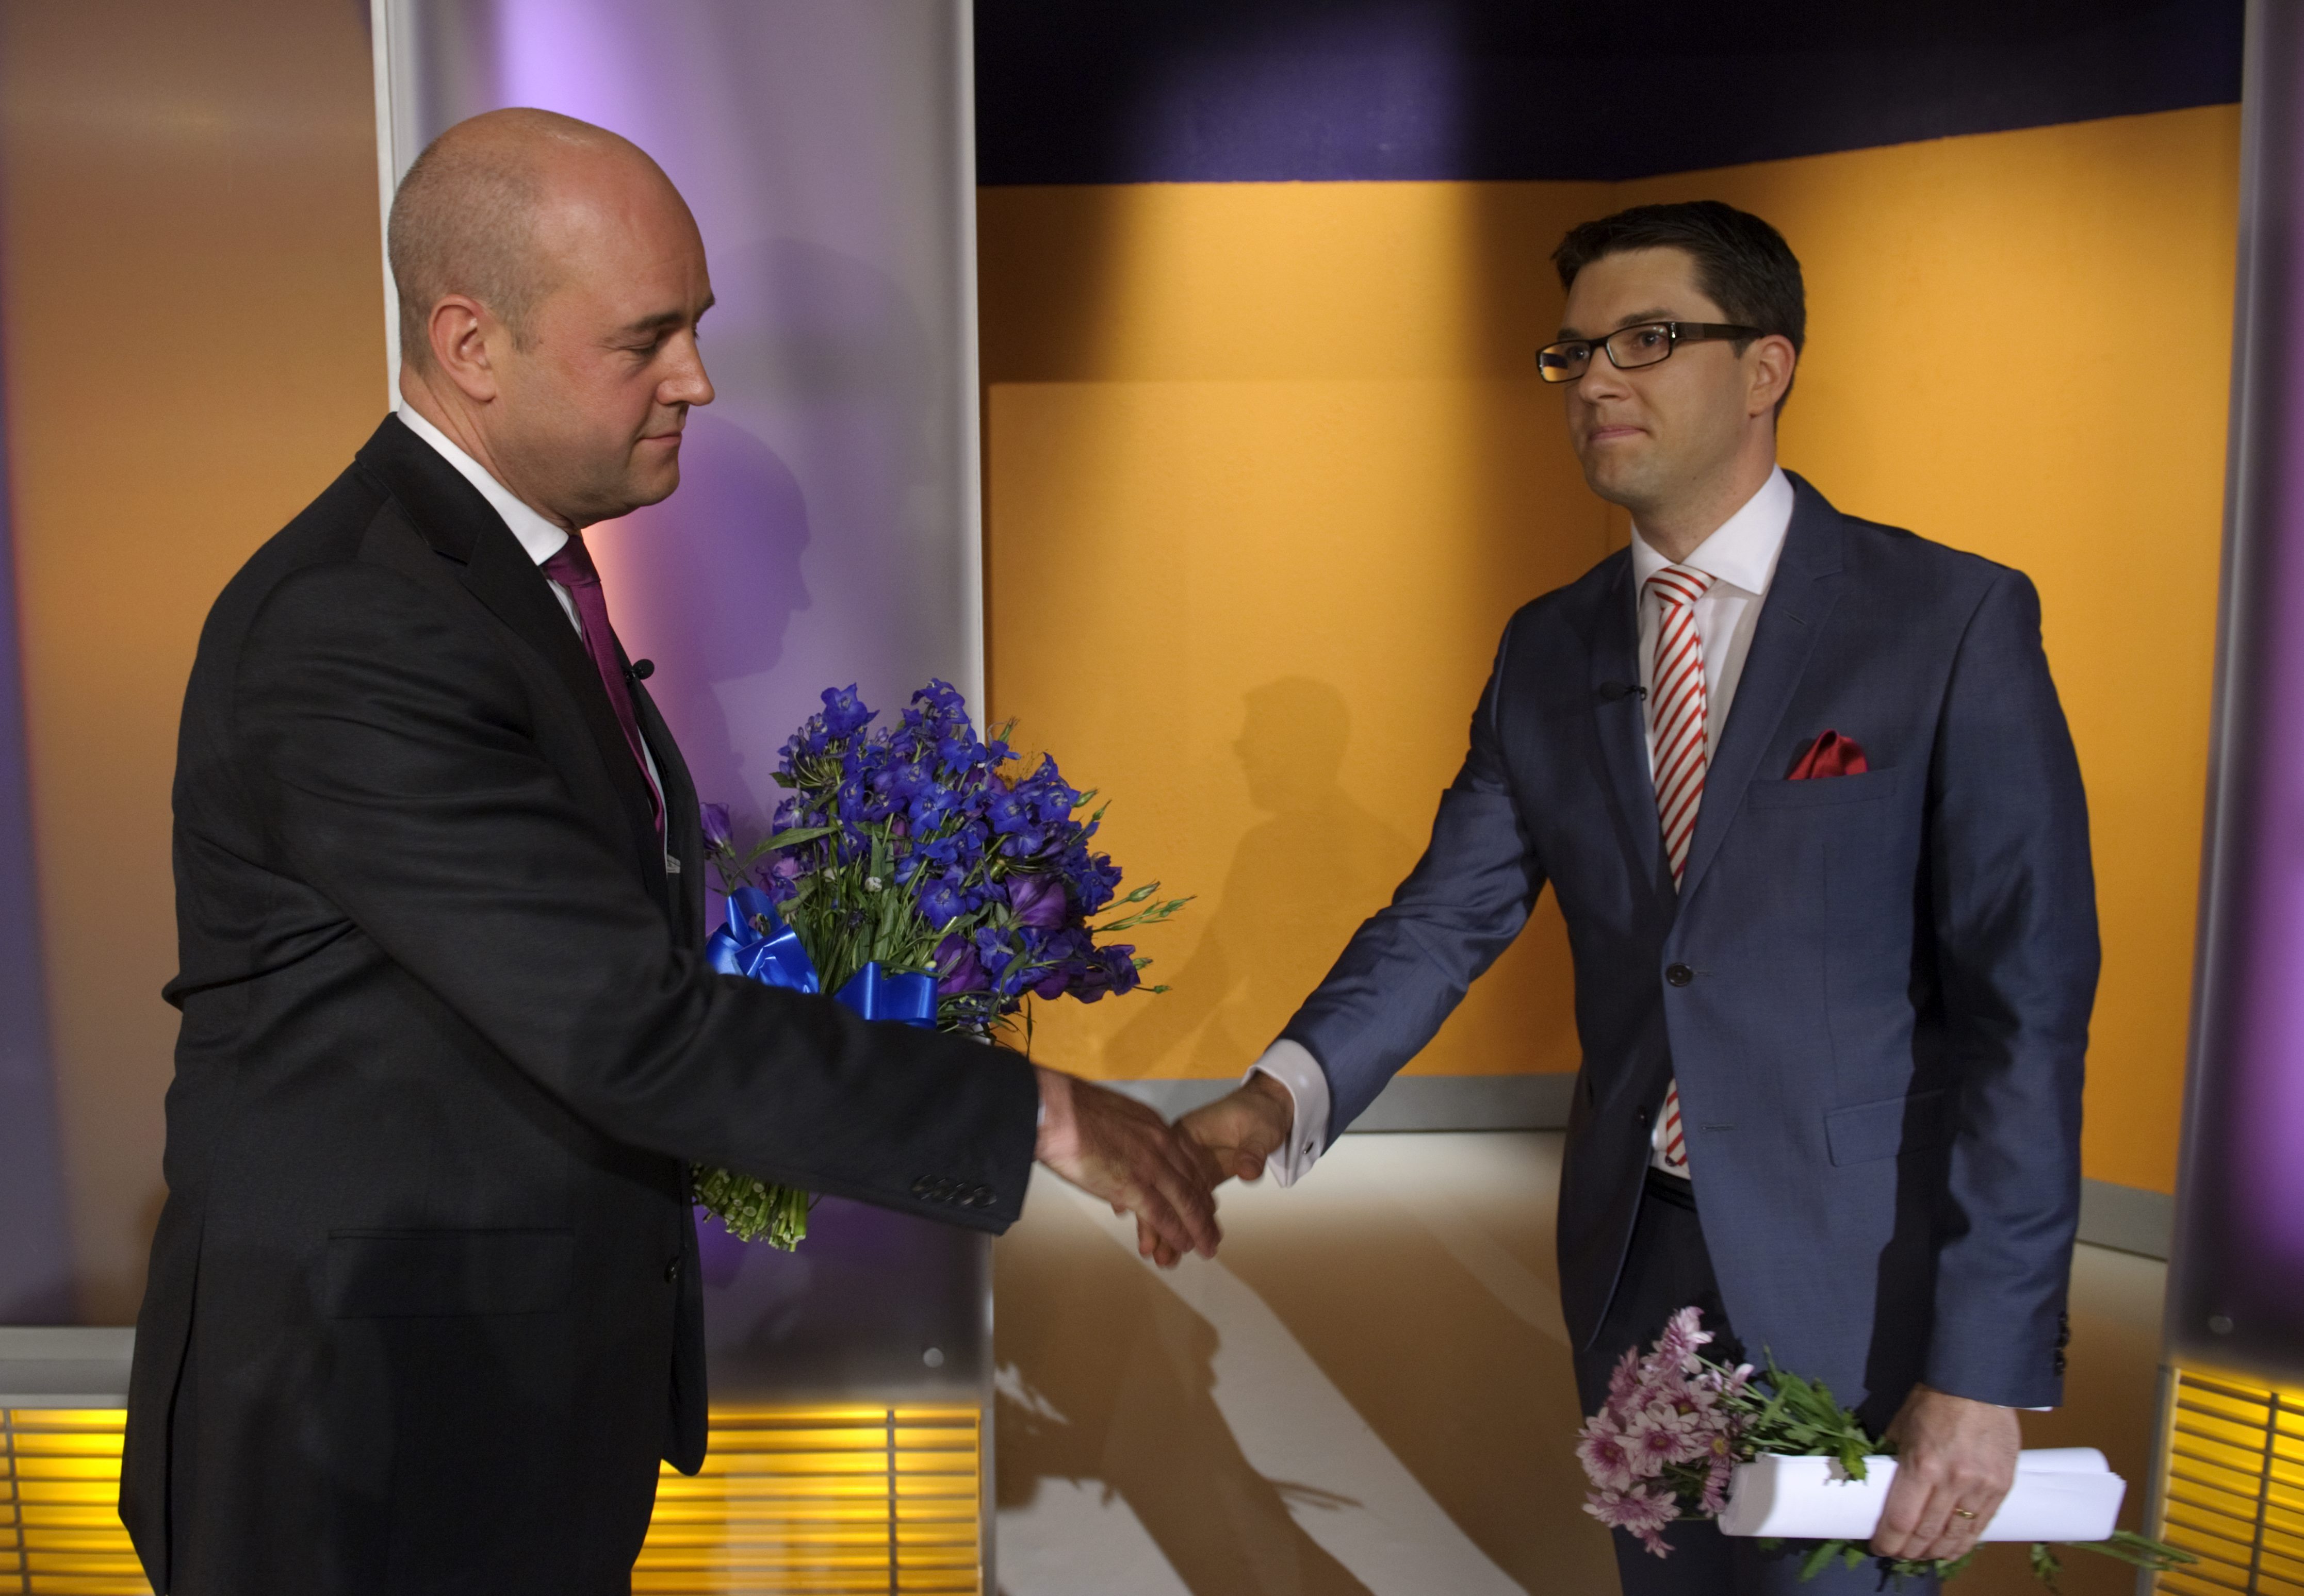 Många rasar efter Reinfeldts uttalande men en person tycker att det är "glädjande" - Jimmie Åkesson.